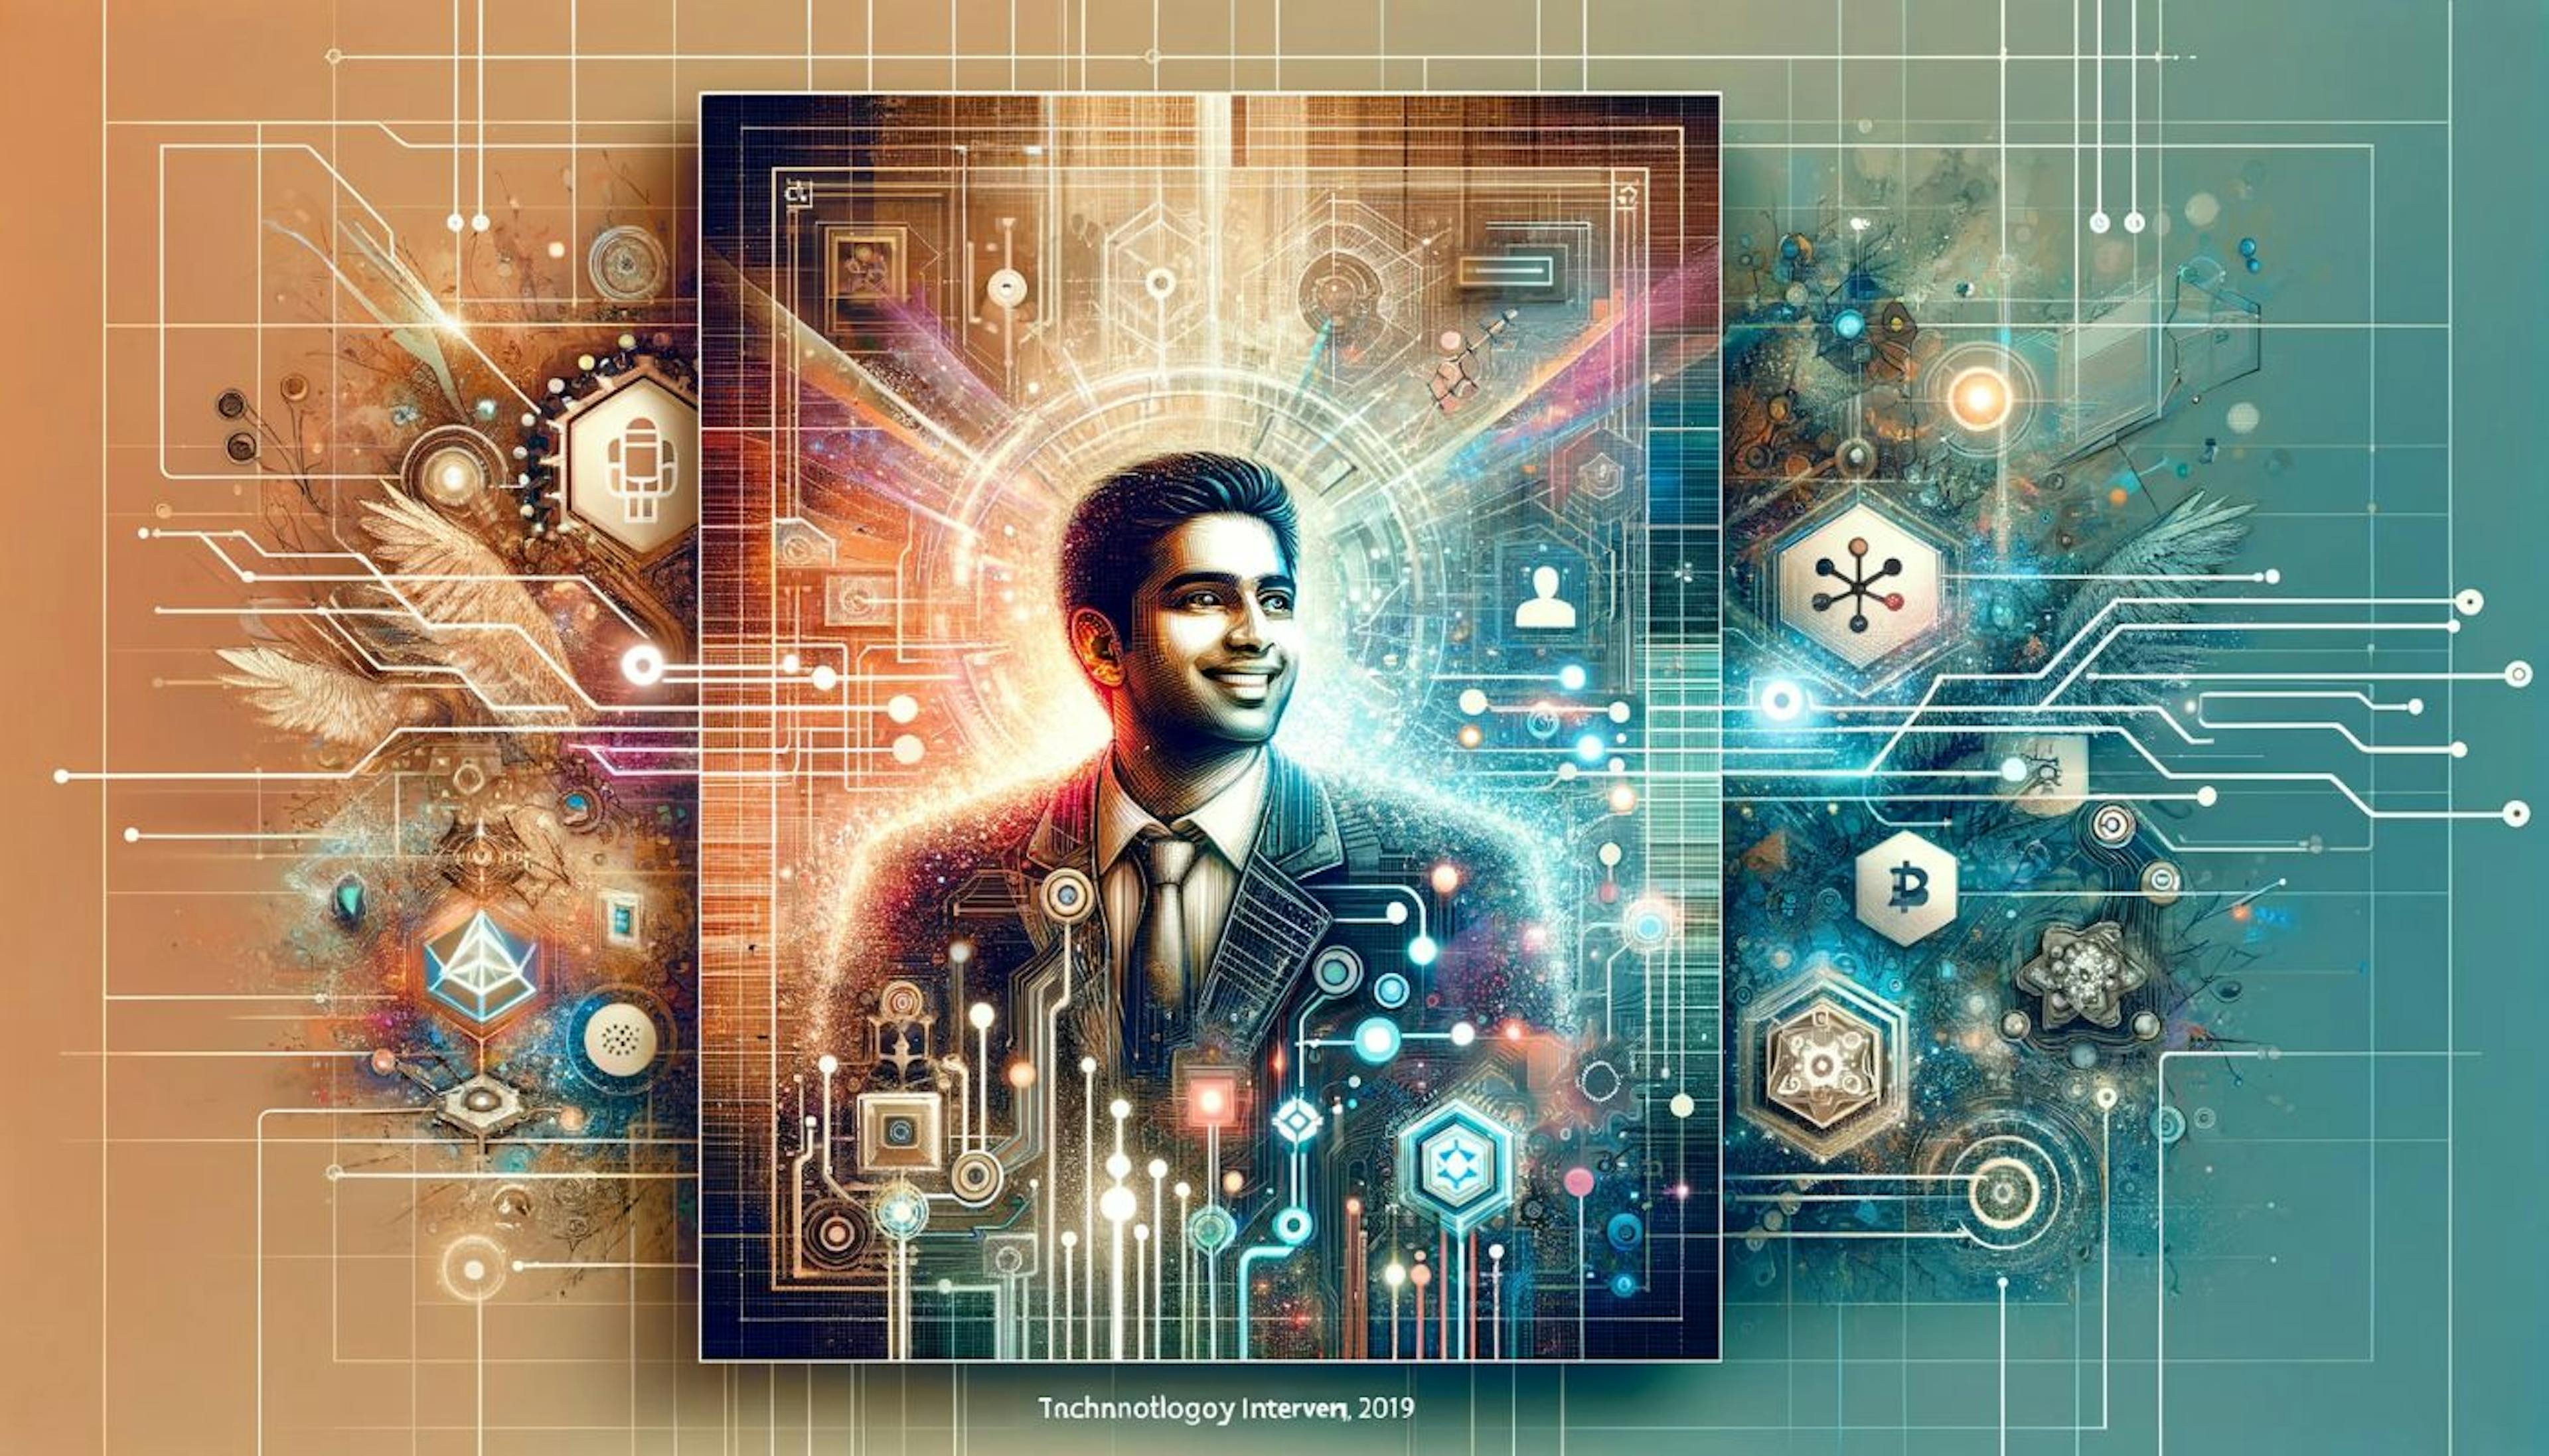 Espírito inovador do domínio Web3 e o papel de Yeshu Agarwal como empreendedor de tecnologia na indústria de blockchain